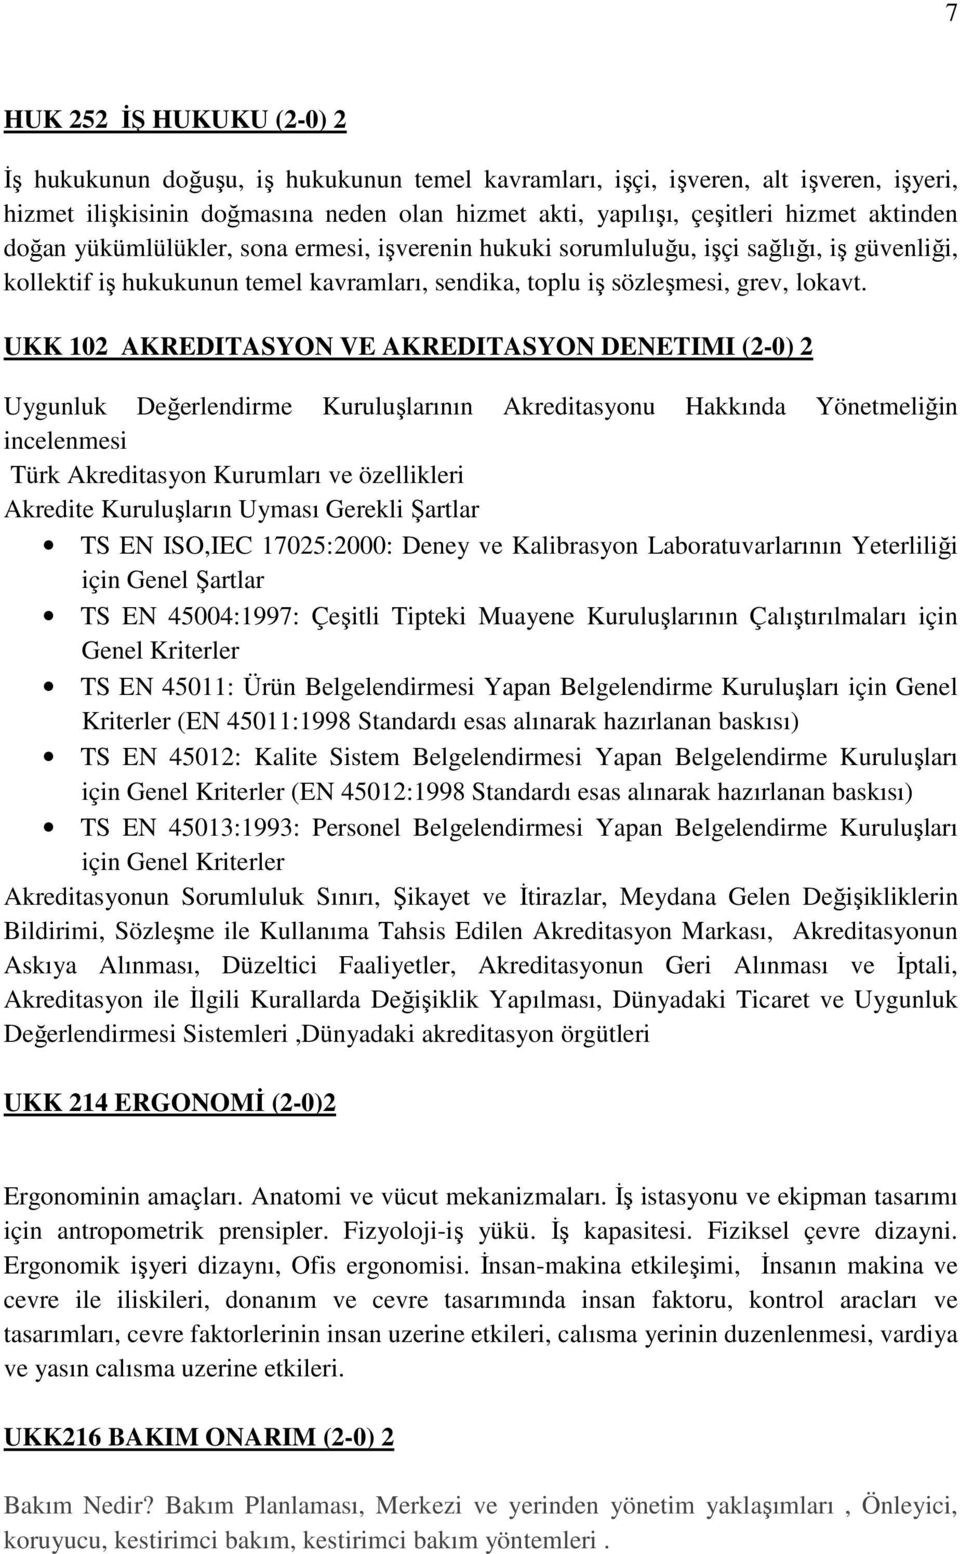 UKK 102 AKREDITASYON VE AKREDITASYON DENETIMI (2-0) 2 Uygunluk Değerlendirme Kuruluşlarının Akreditasyonu Hakkında Yönetmeliğin incelenmesi Türk Akreditasyon Kurumları ve özellikleri Akredite